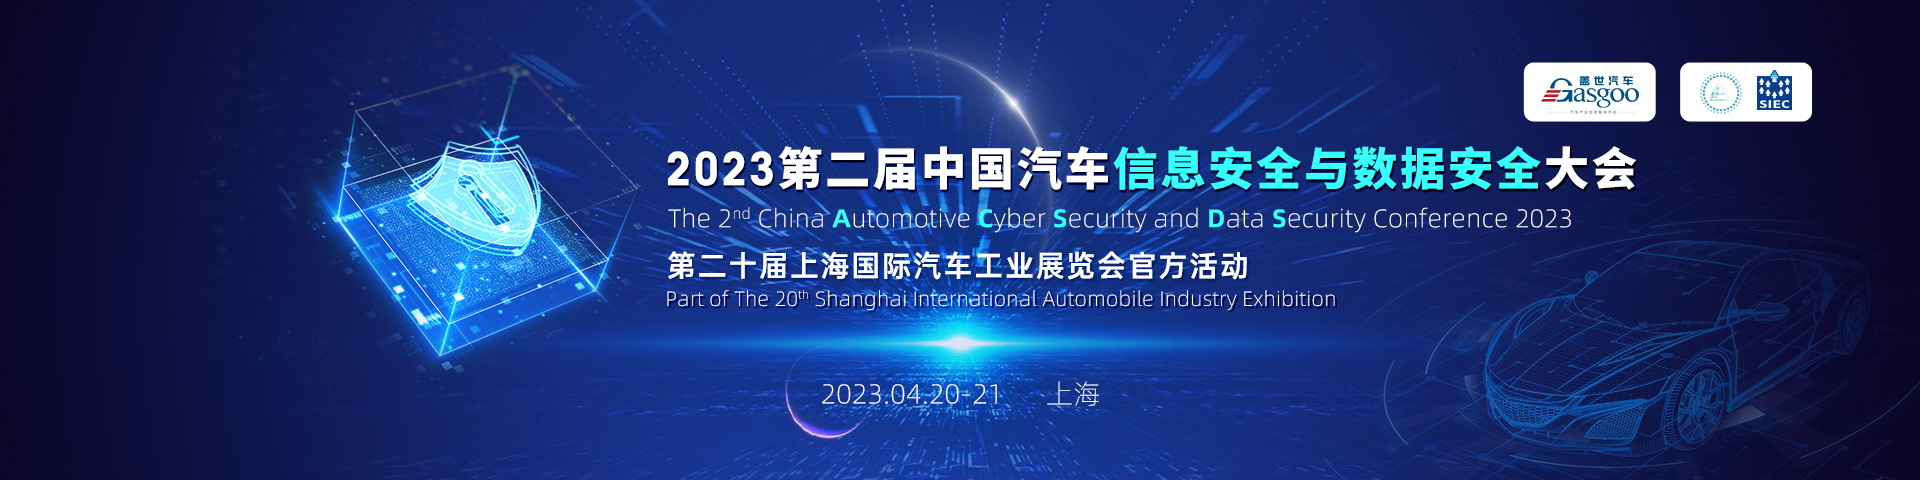 盖世汽车2023第二届中国汽车信息安全与数据安全大会